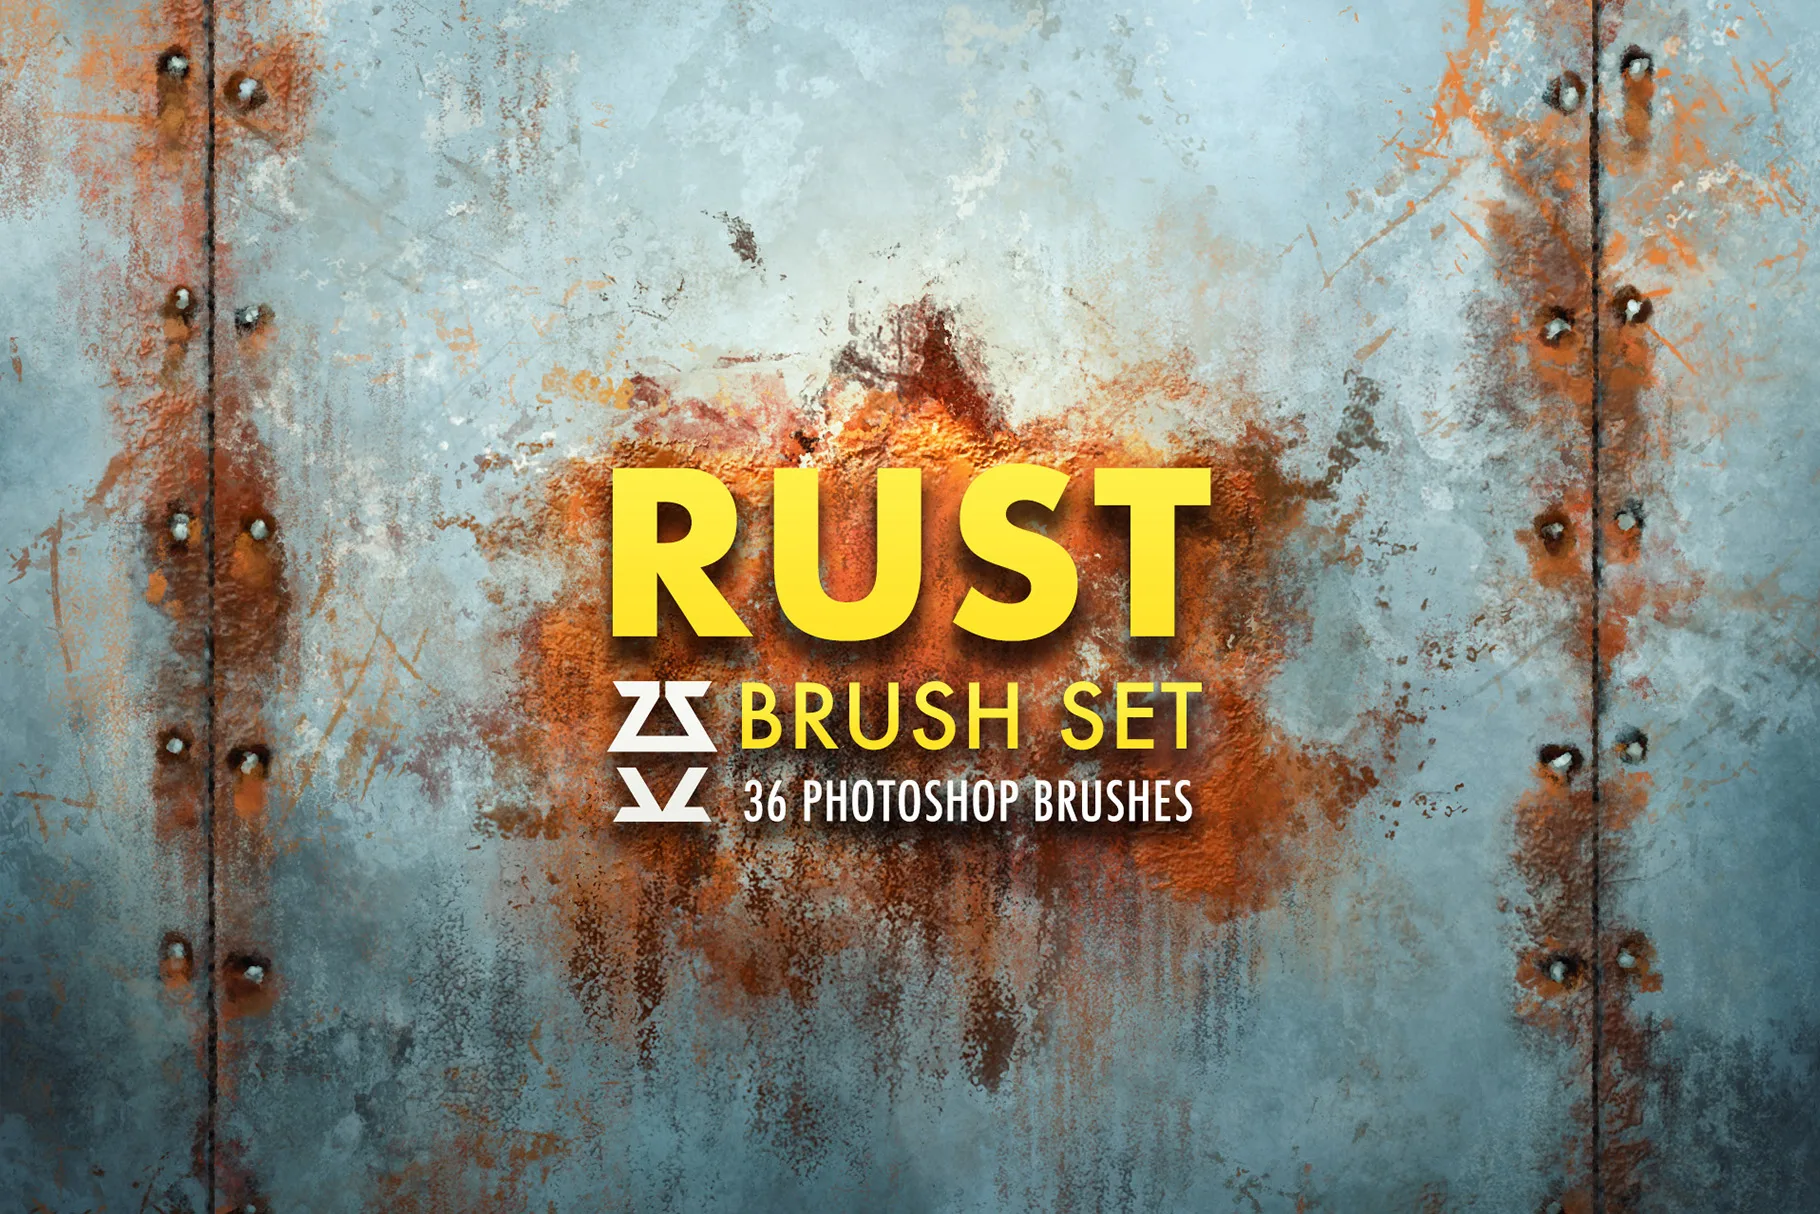 Rust Brush Set